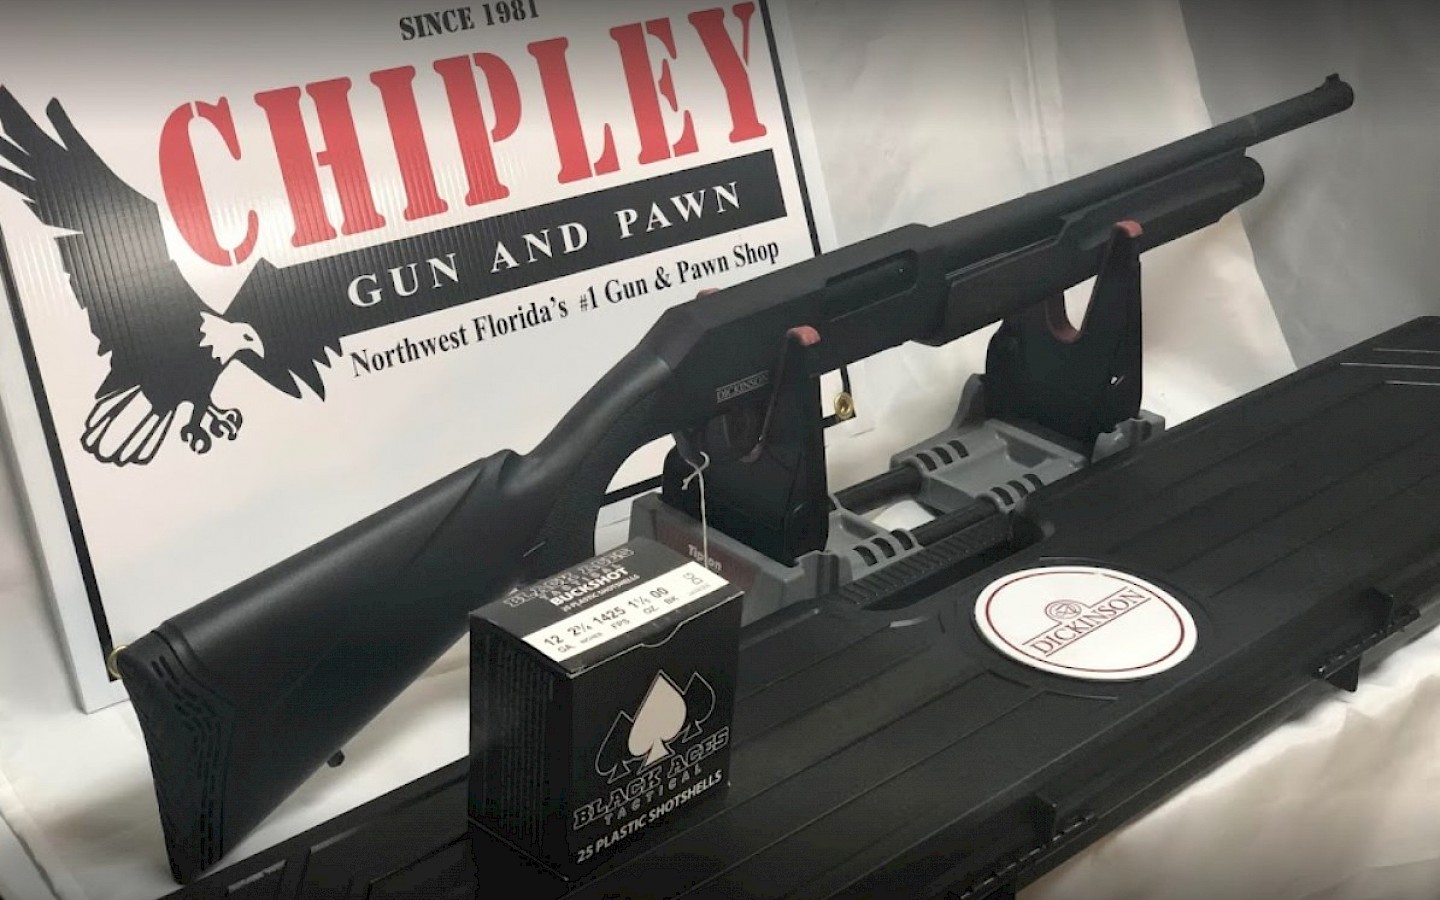 a shotgun on a display at chipley gun and pawn